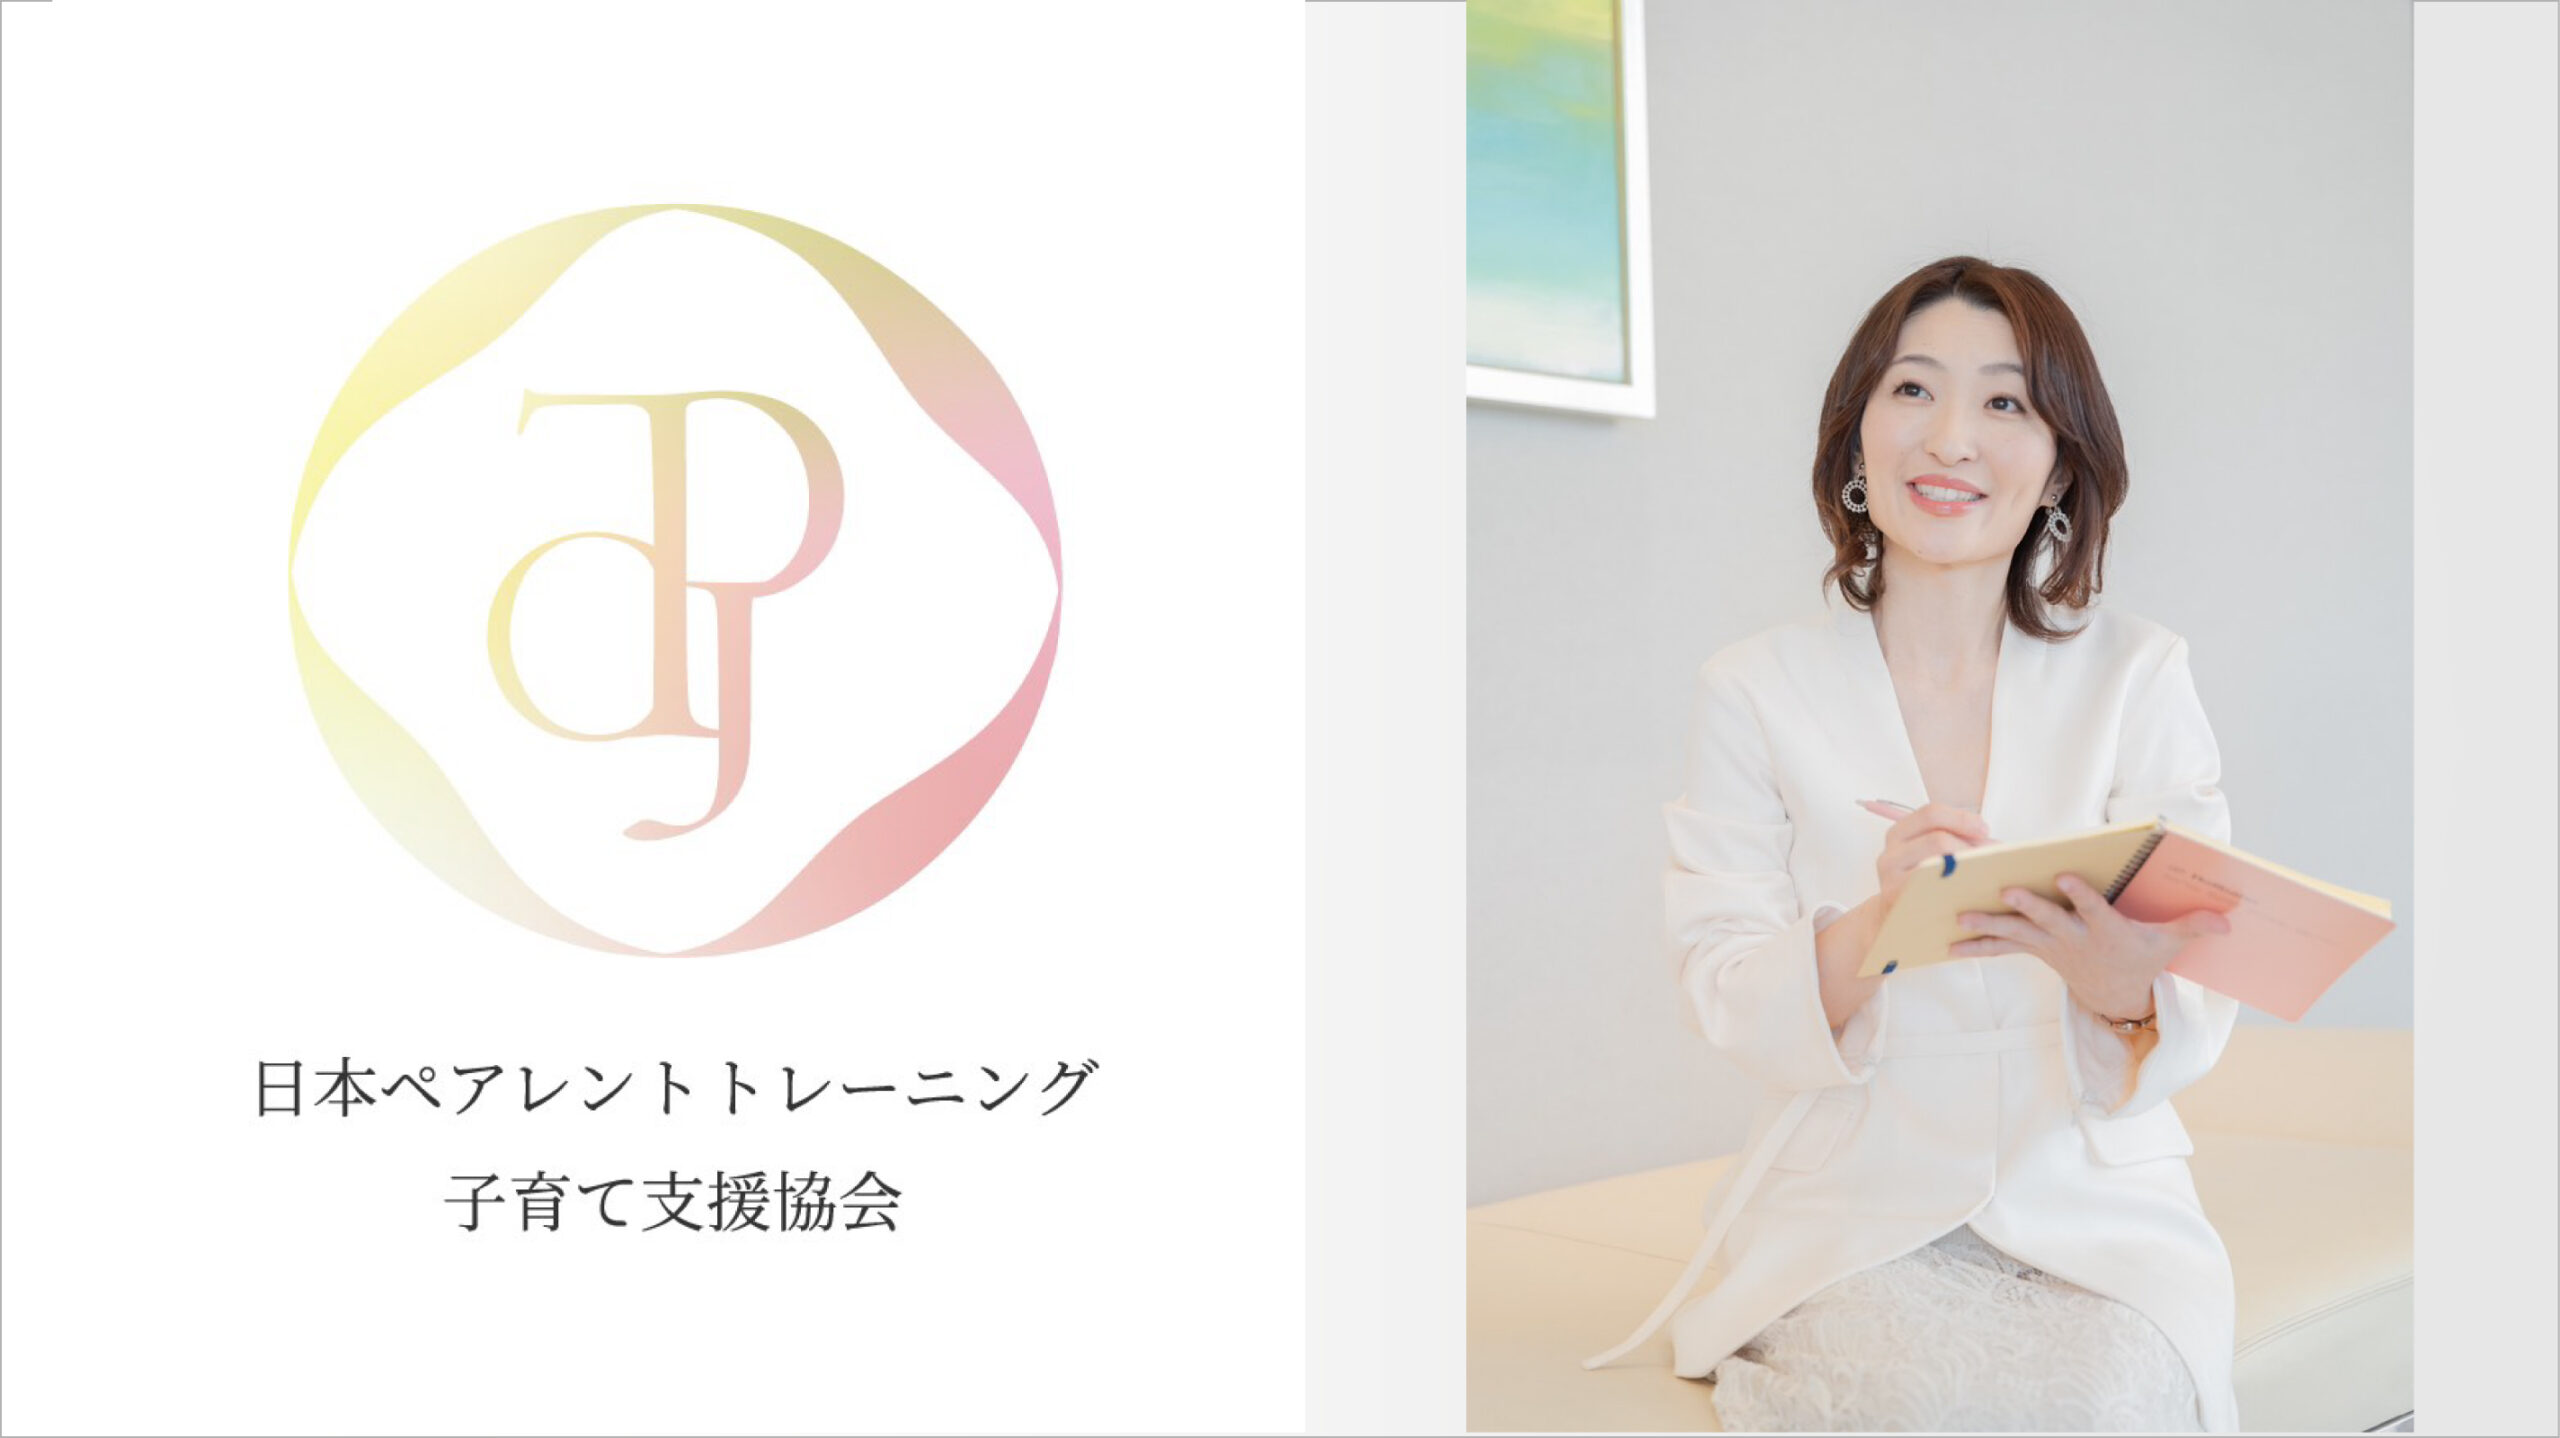 平ひかりさんと日本ペアレントトレーニング子育て支援協会のロゴ